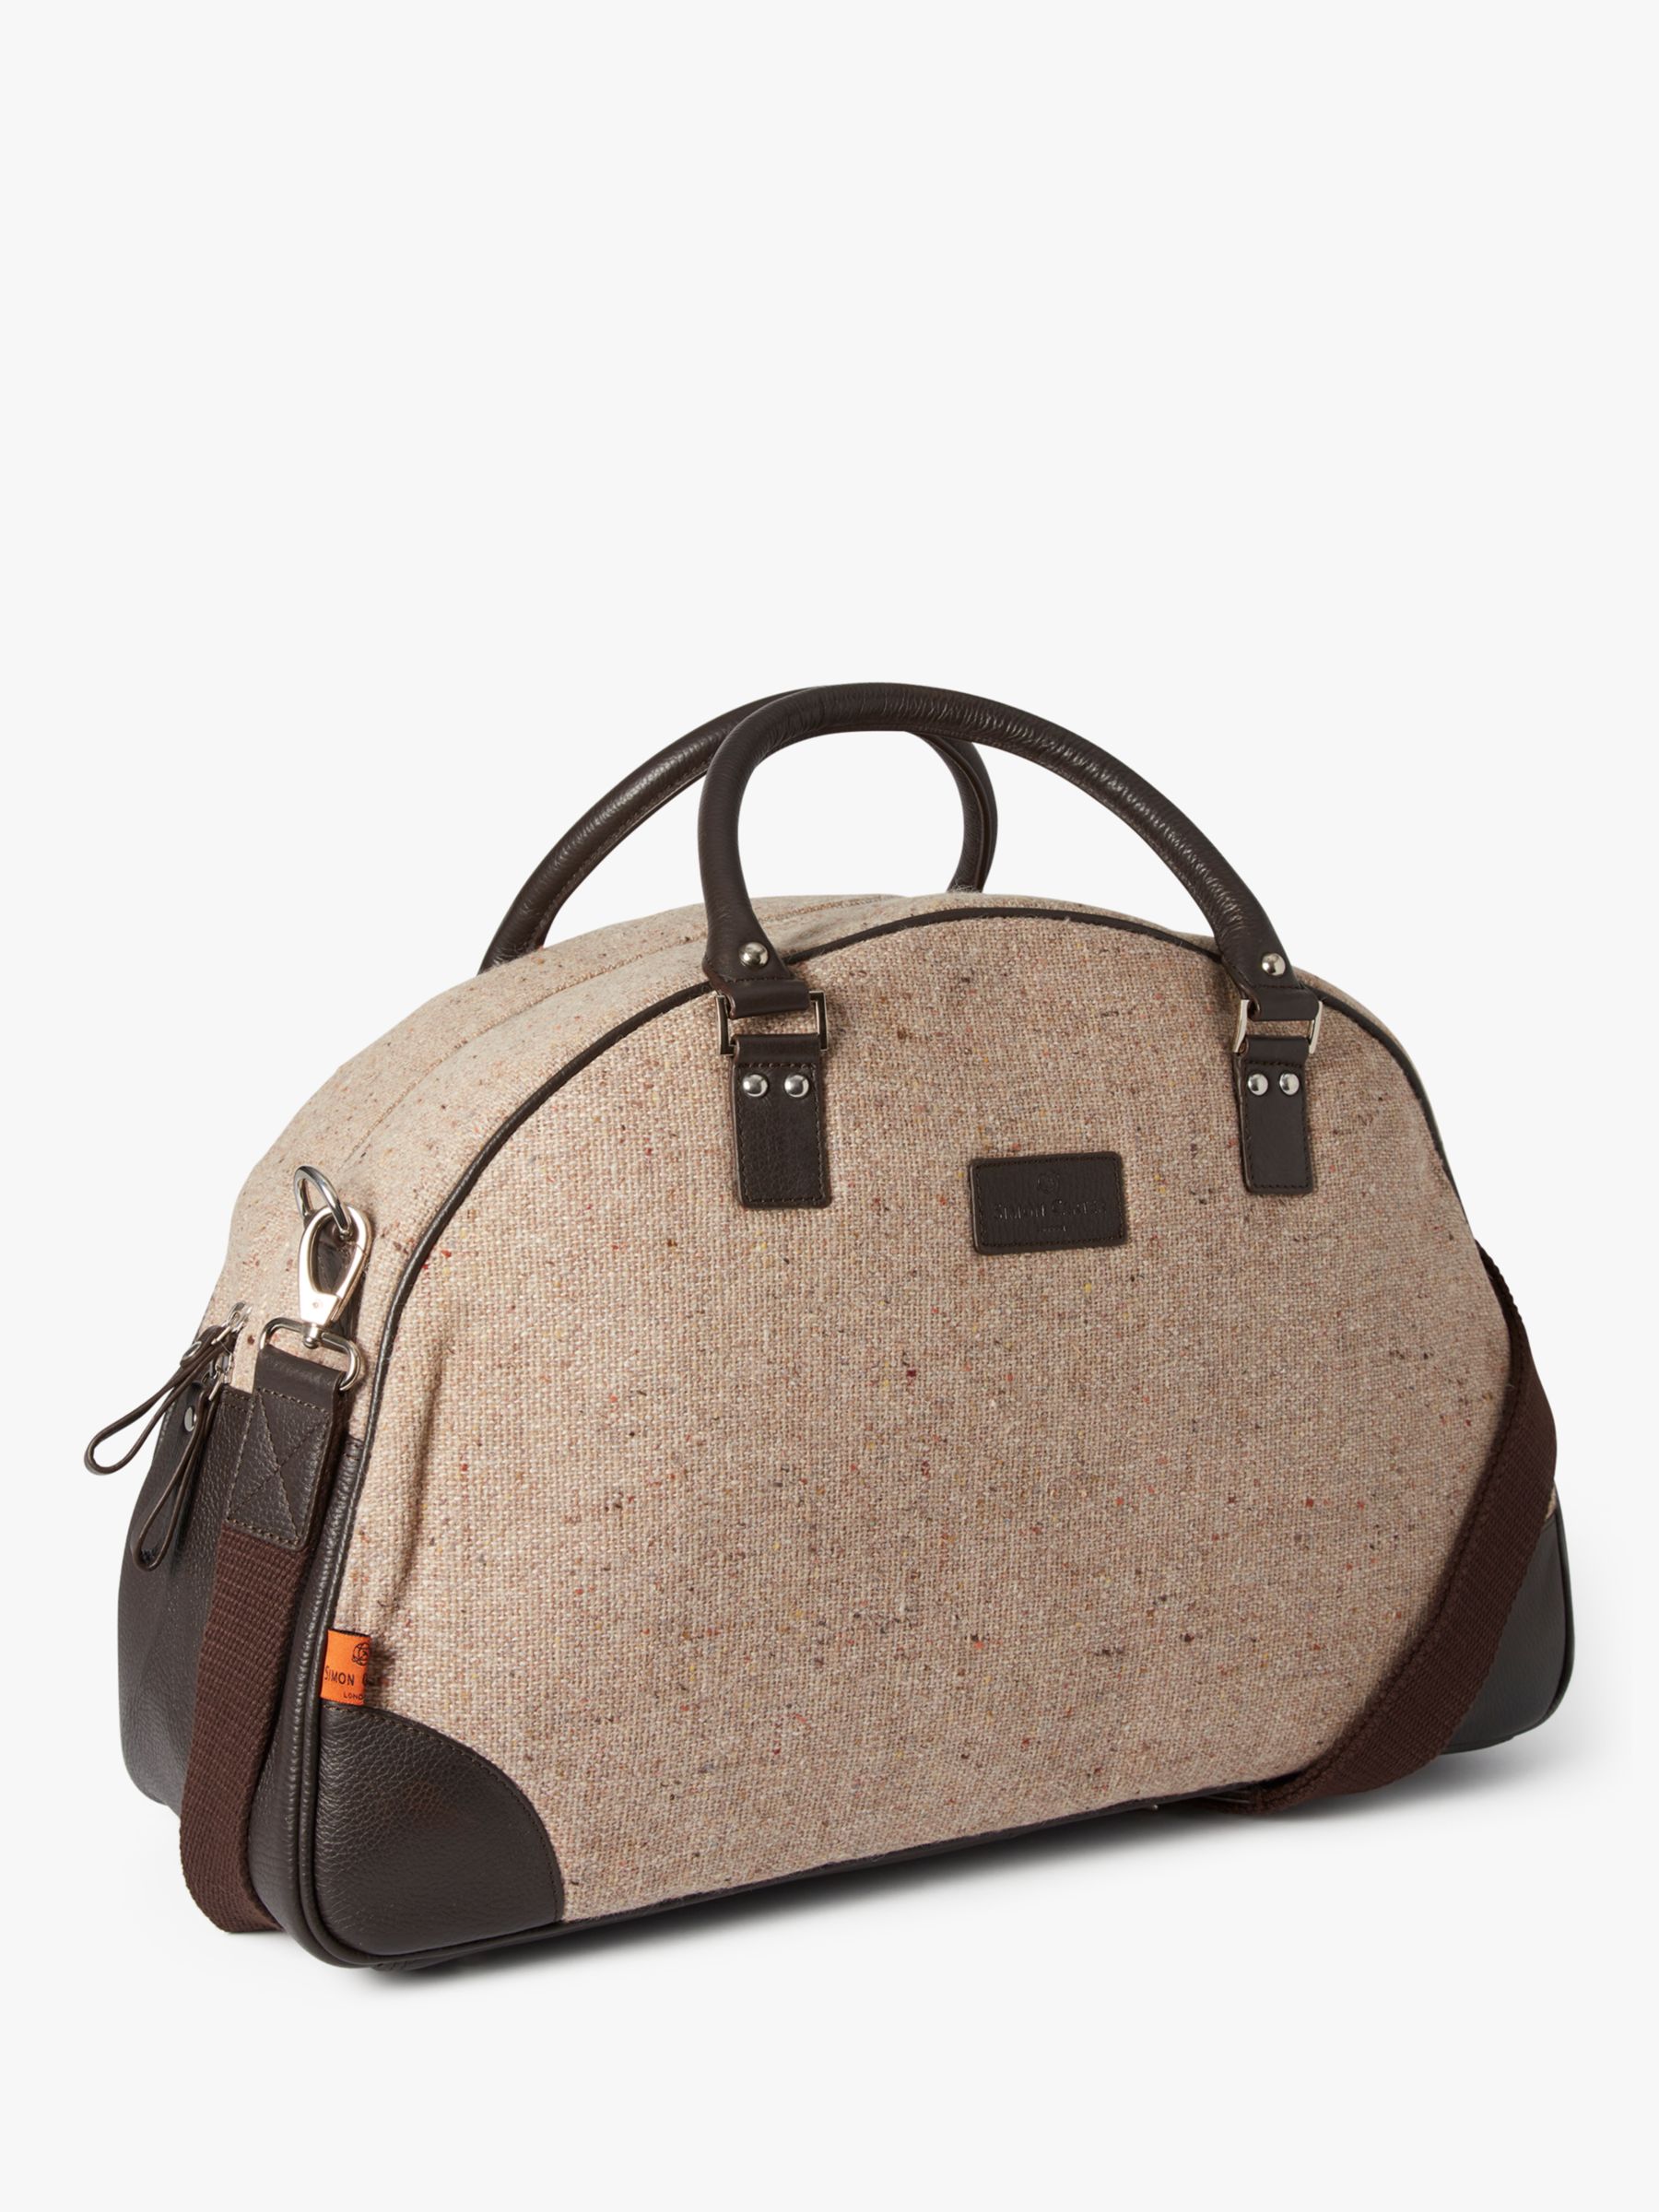 Simon Carter Folkestone Tweed Bag, Beige/Brown